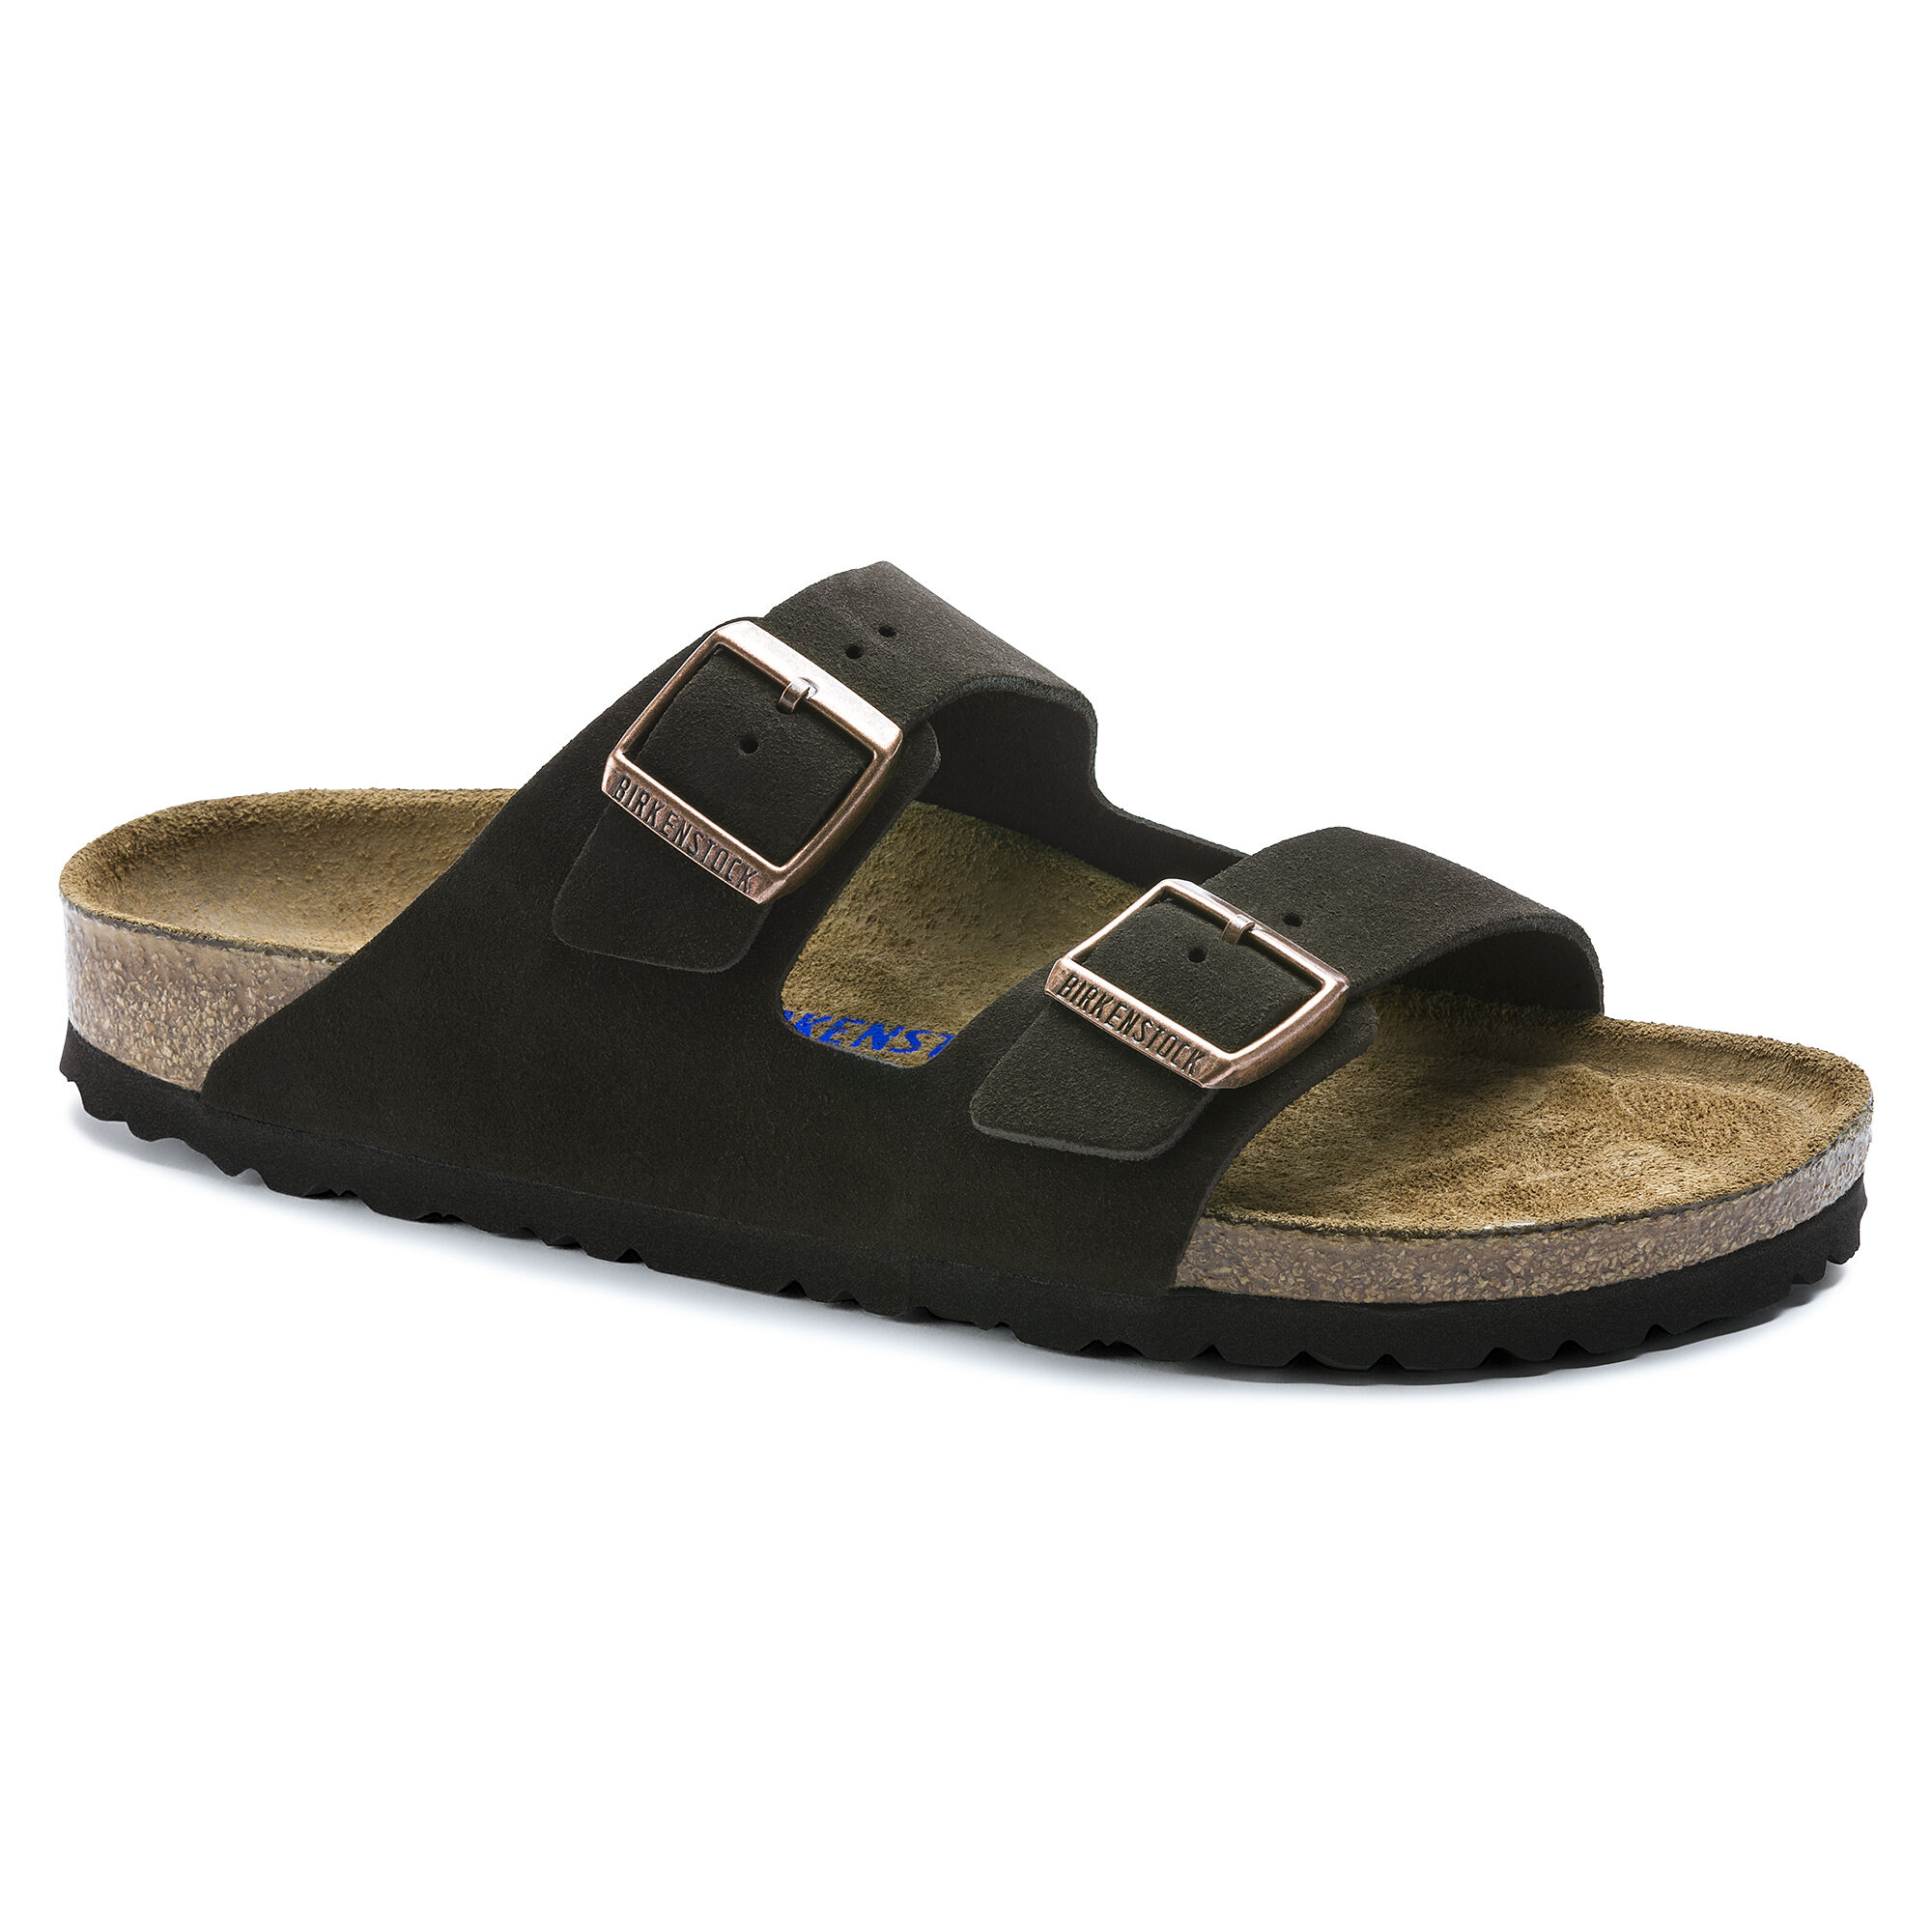 birkenstock soft footbed men's sandals